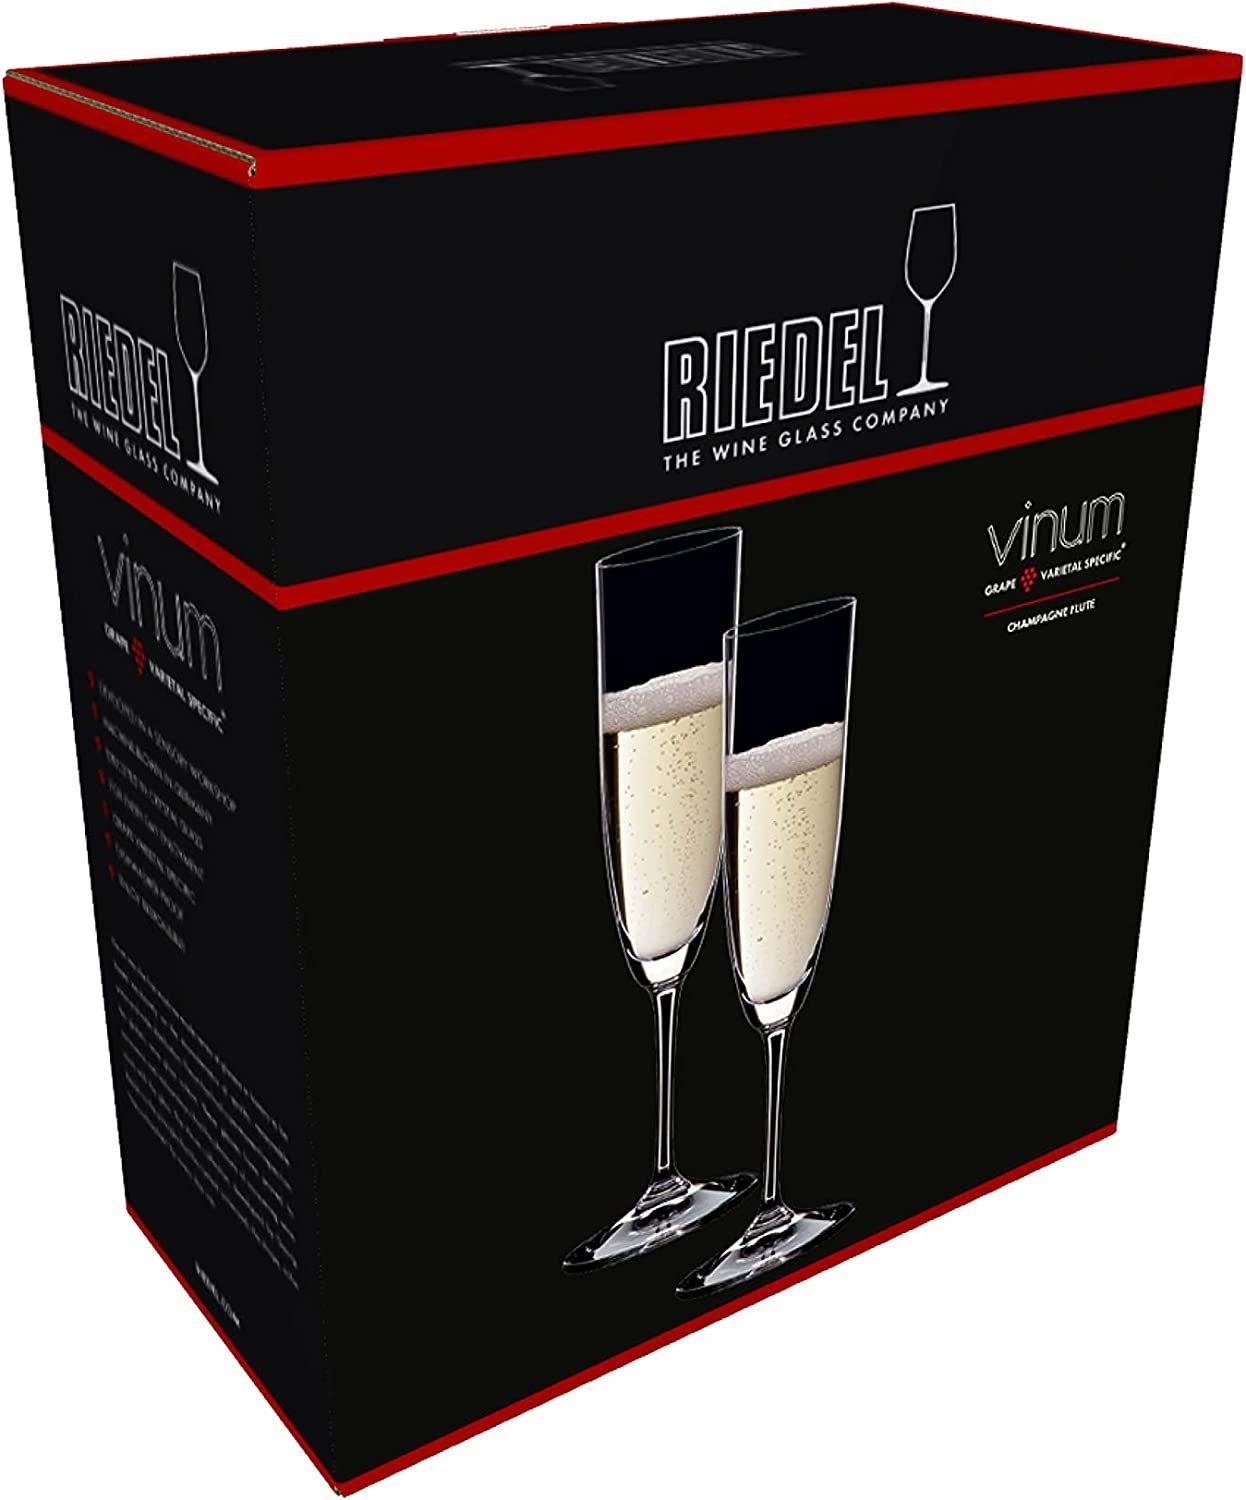 RIEDEL Vinum Champagner Kristallglas Glas Glas Flute, Riedel